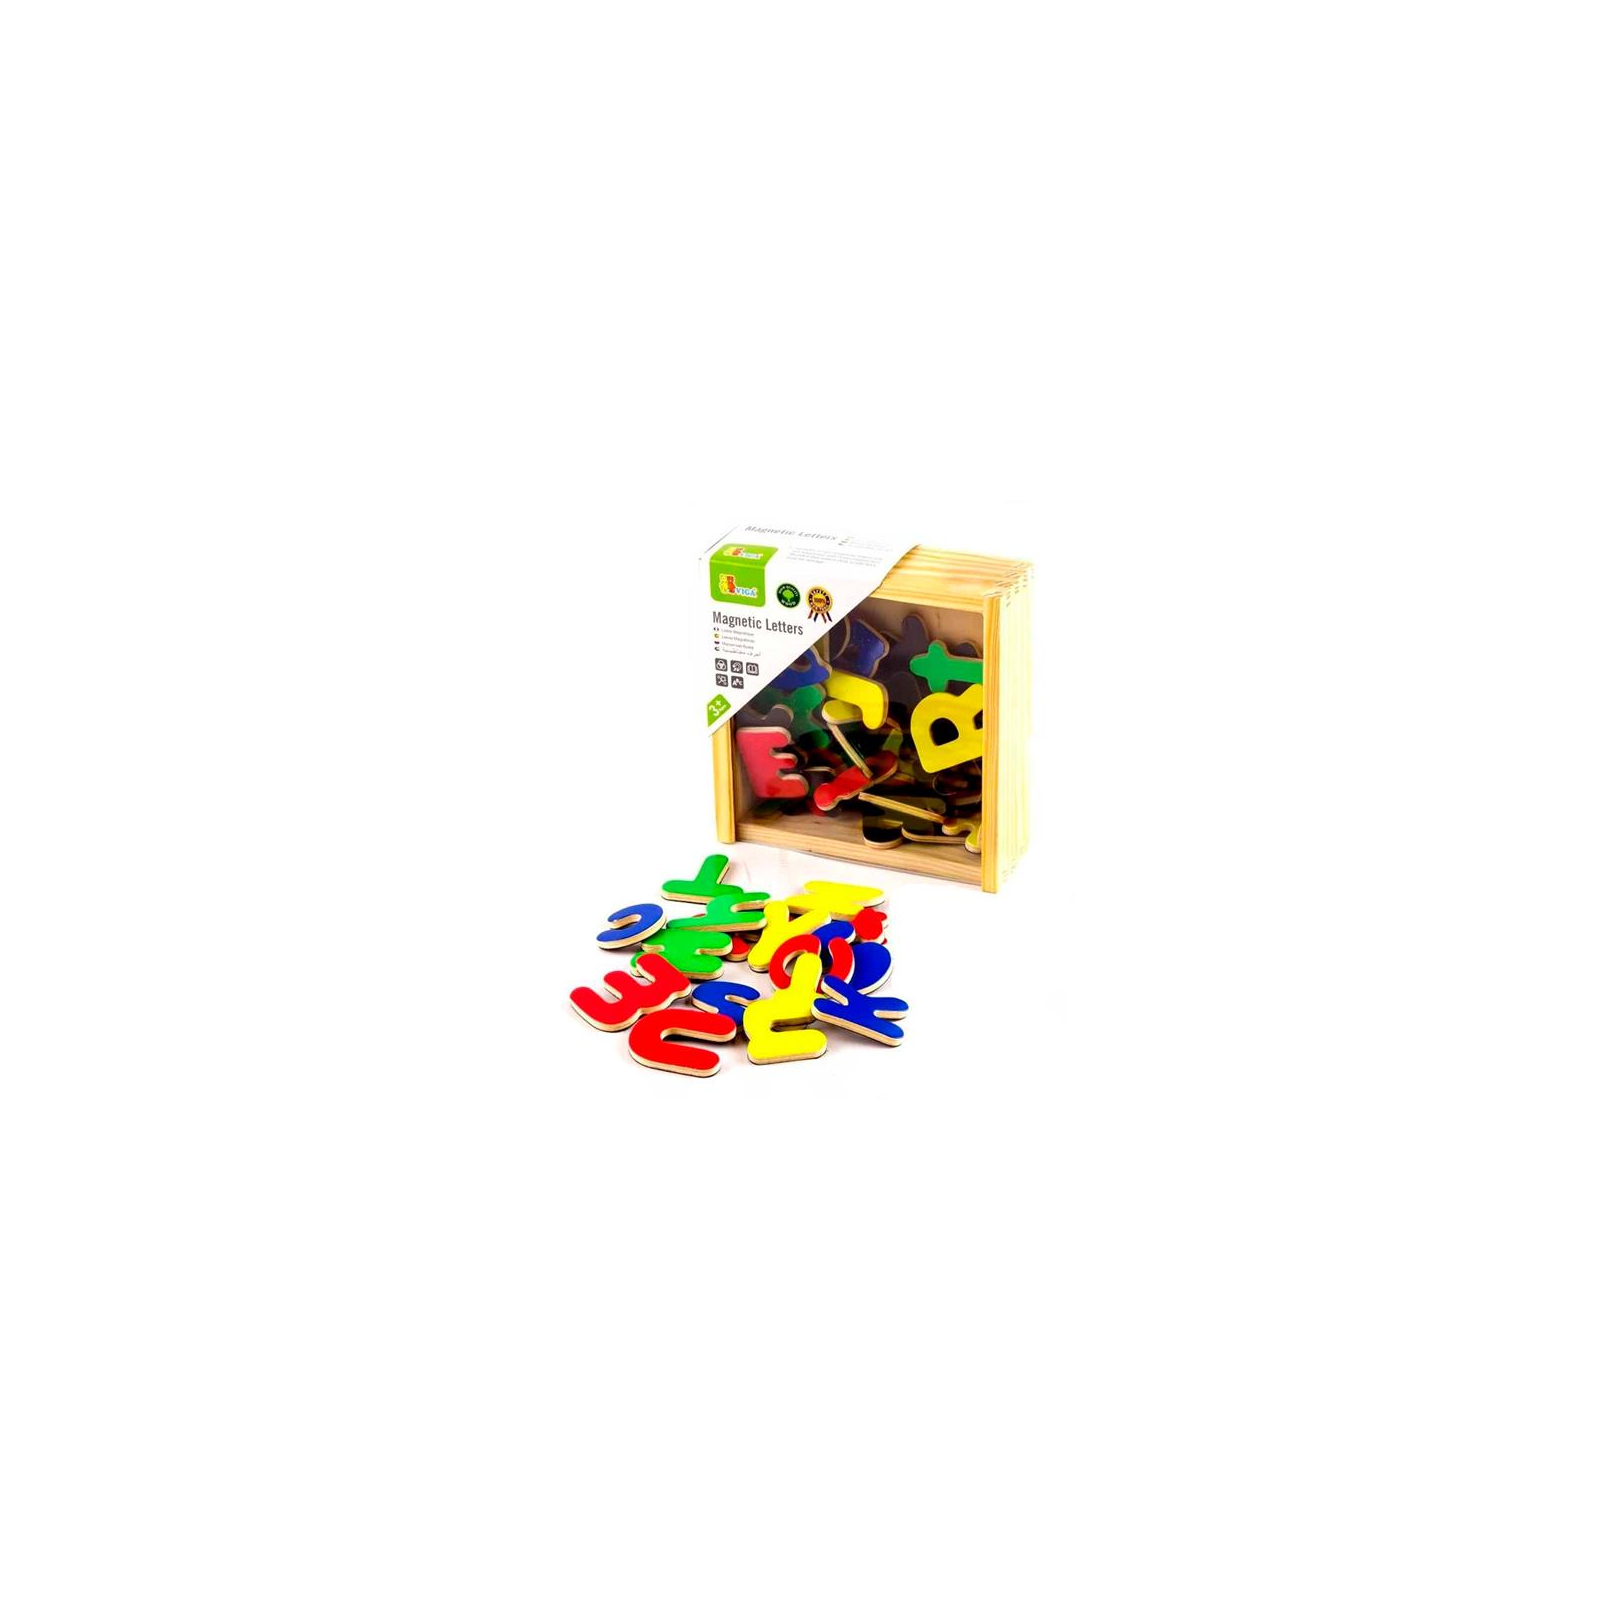 Развивающая игрушка Viga Toys Магнитные буквы, 52 шт. (50324)